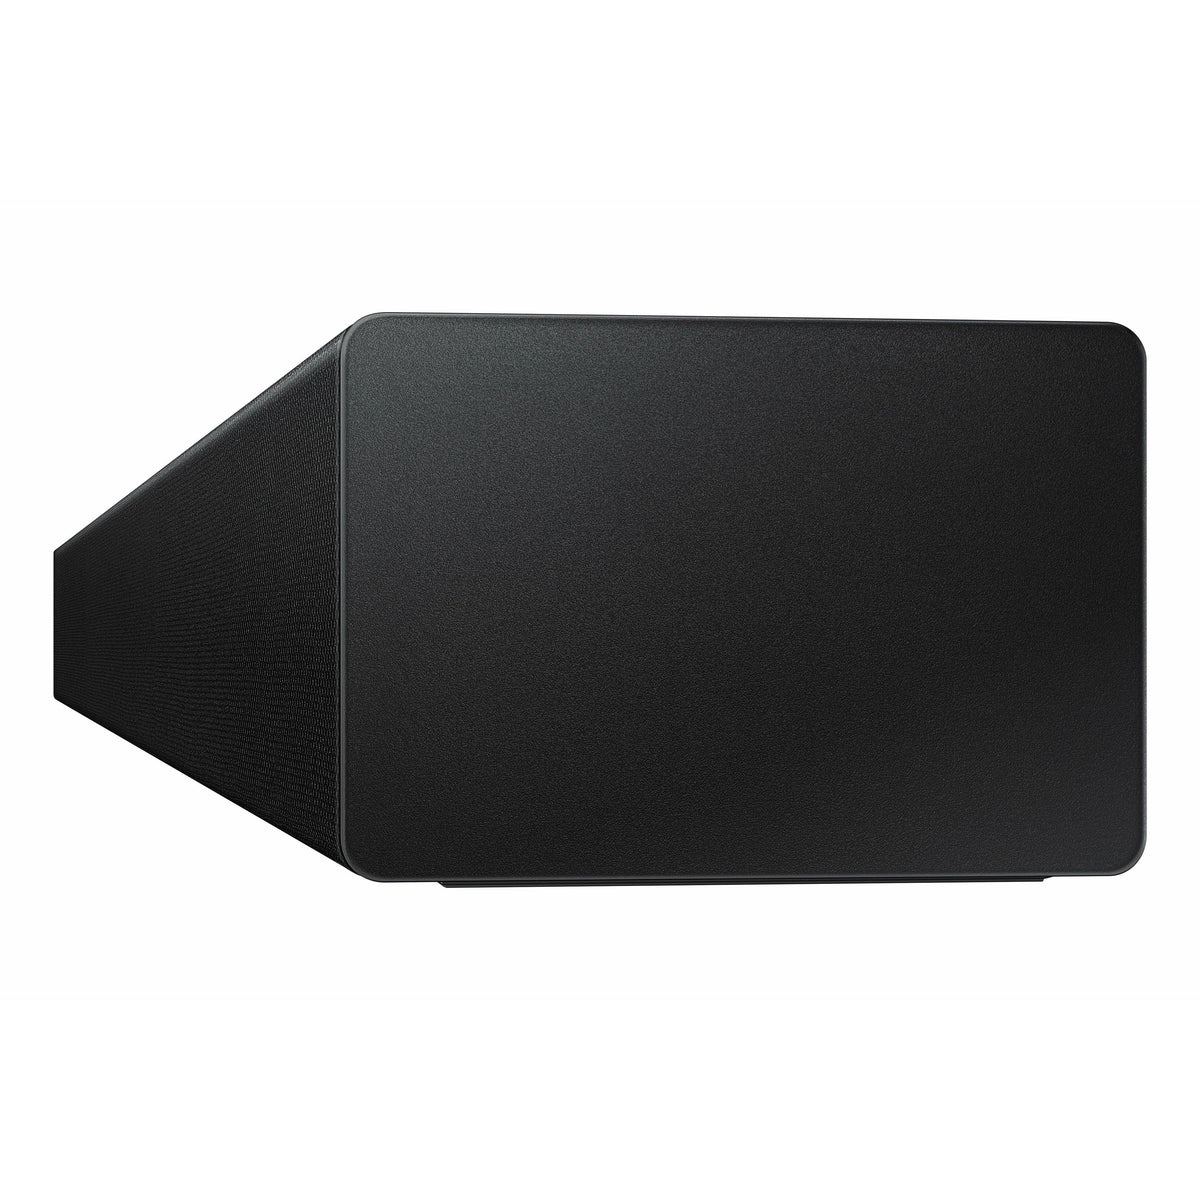 Open Boxed/ Ex-Display - Samsung 2.1ch 200W Bluetooth Soundbar - Black | HW-T450/XU (6890865066172)